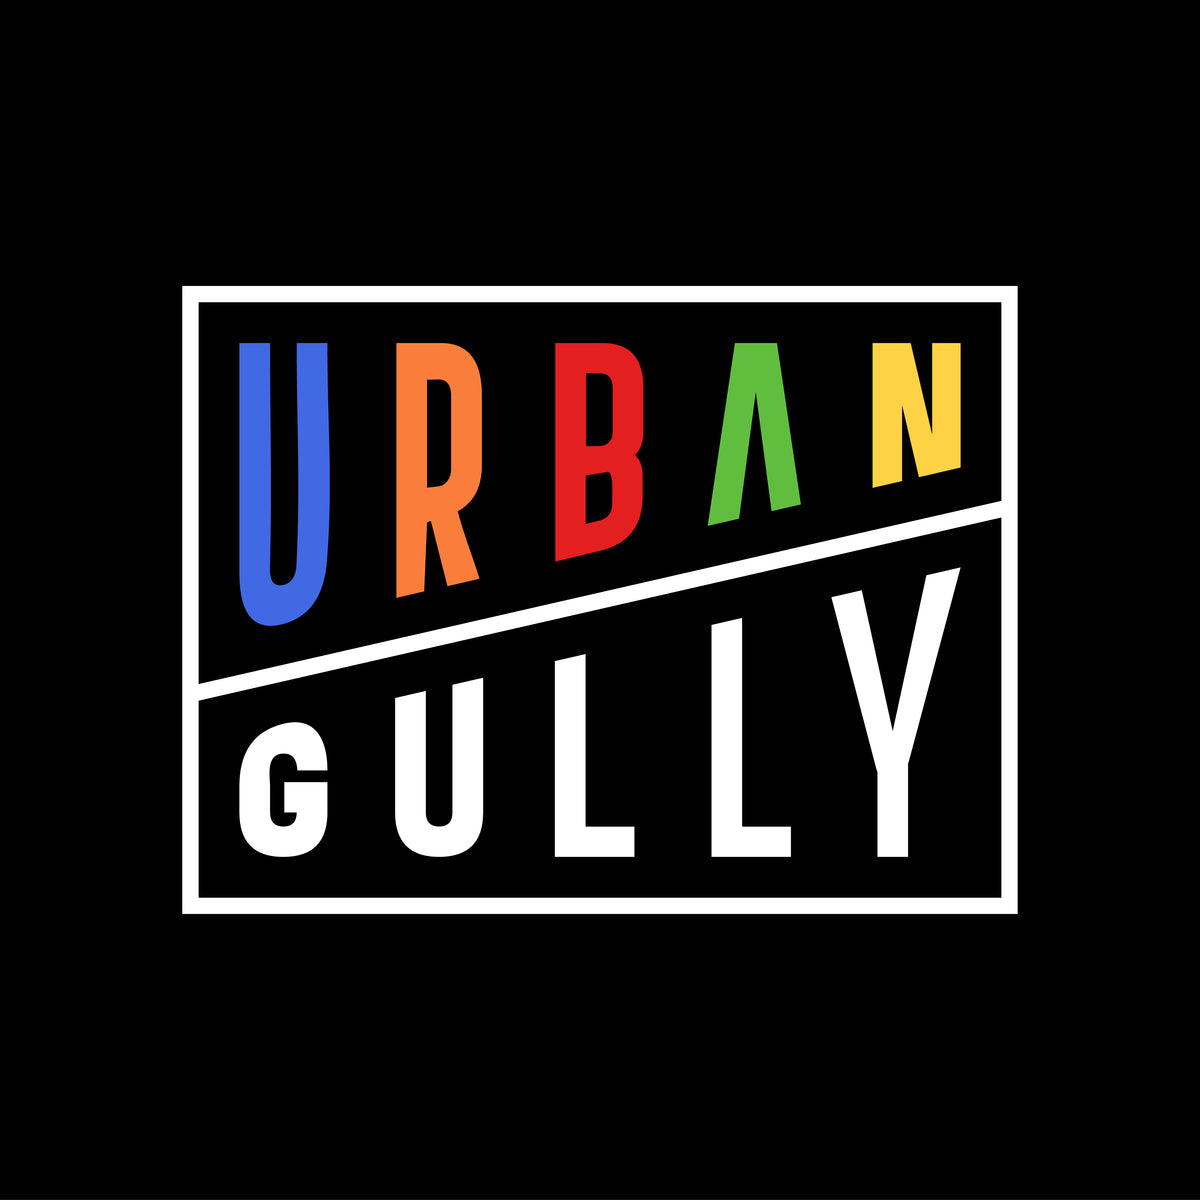 Urban Gully